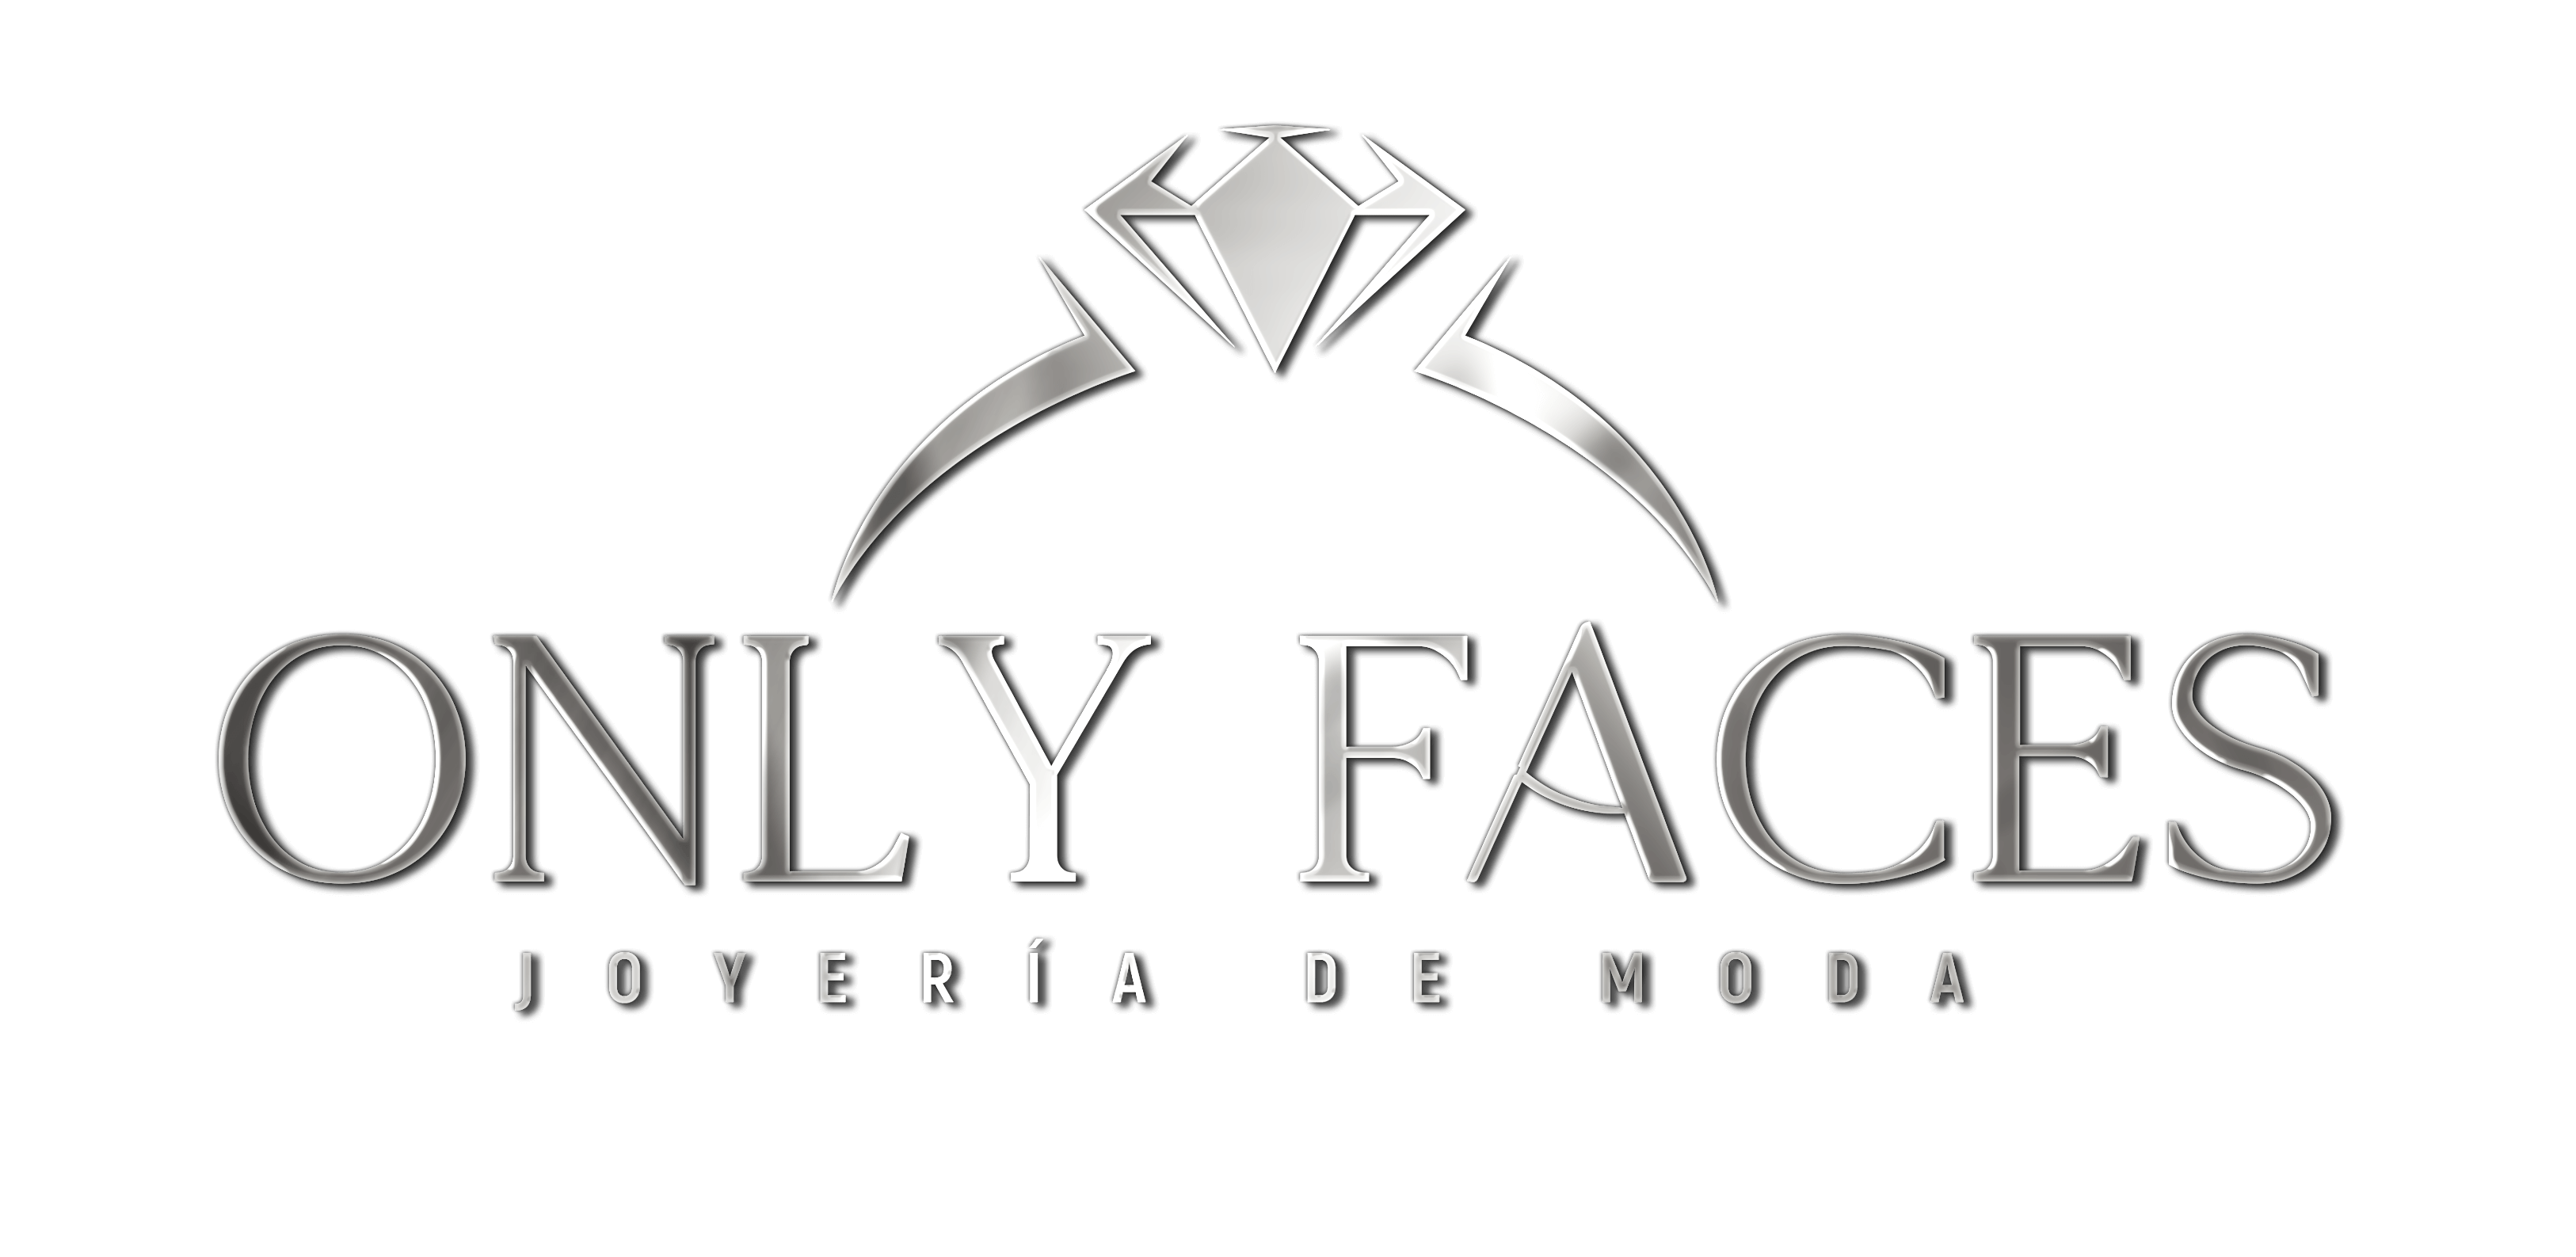 Joyería Only faces Ecuador